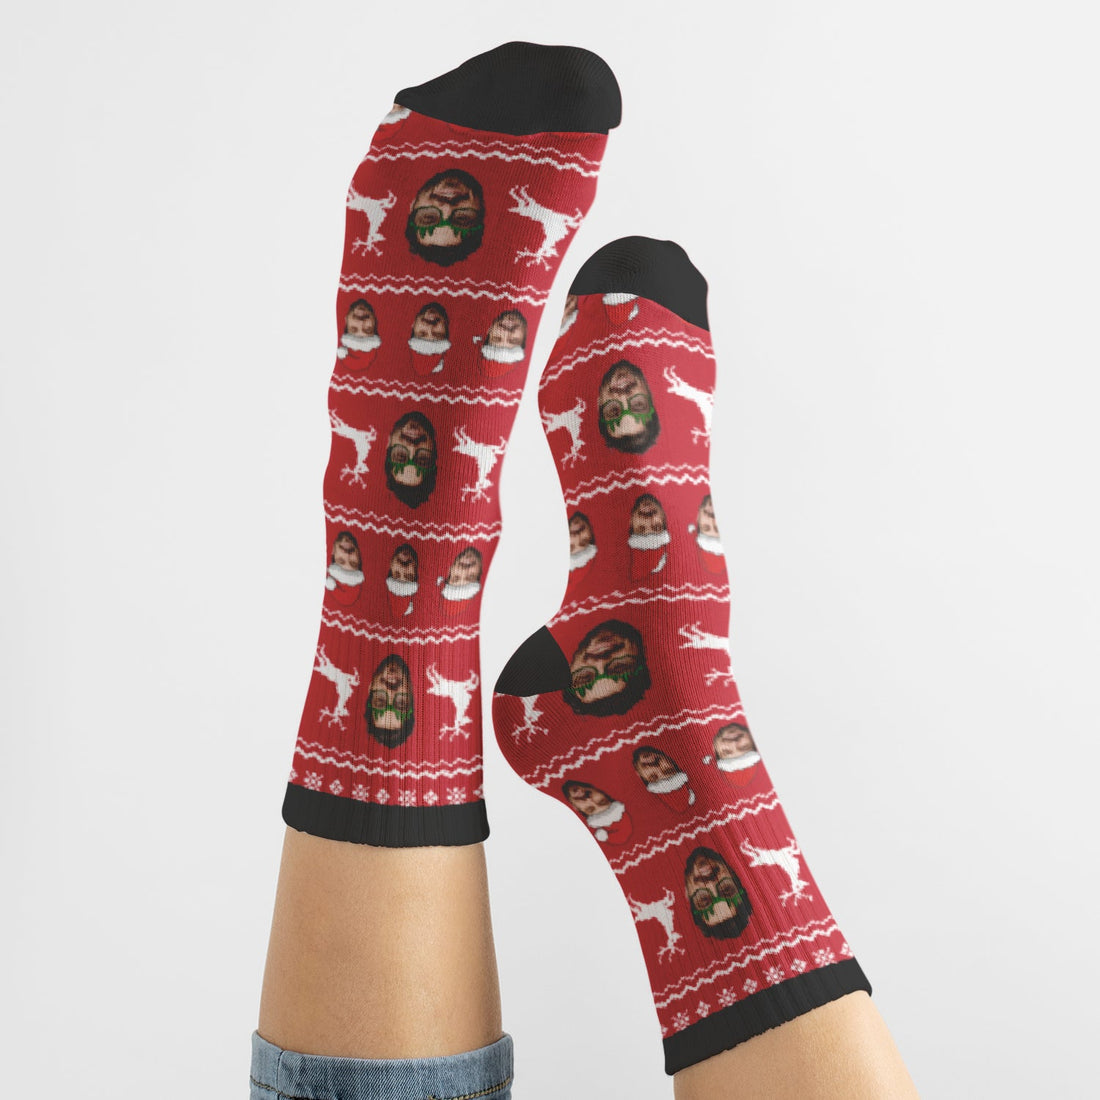 Calcetines Personalizados con Cara Navidad